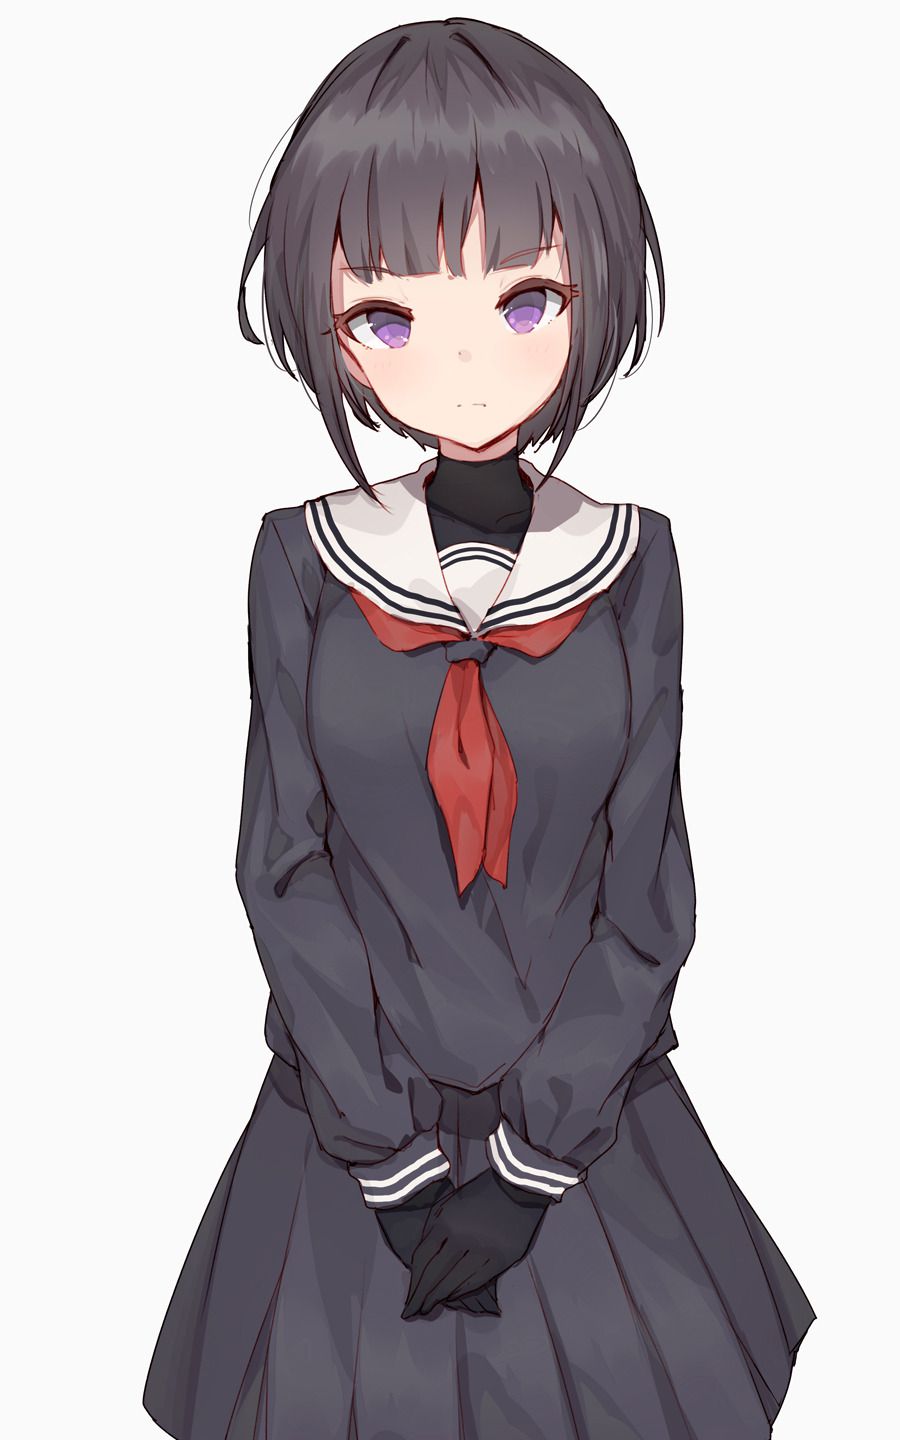 【2D】Speaking of school uniforms, sailor uniforms! Erotic images of cute schoolgirls 8